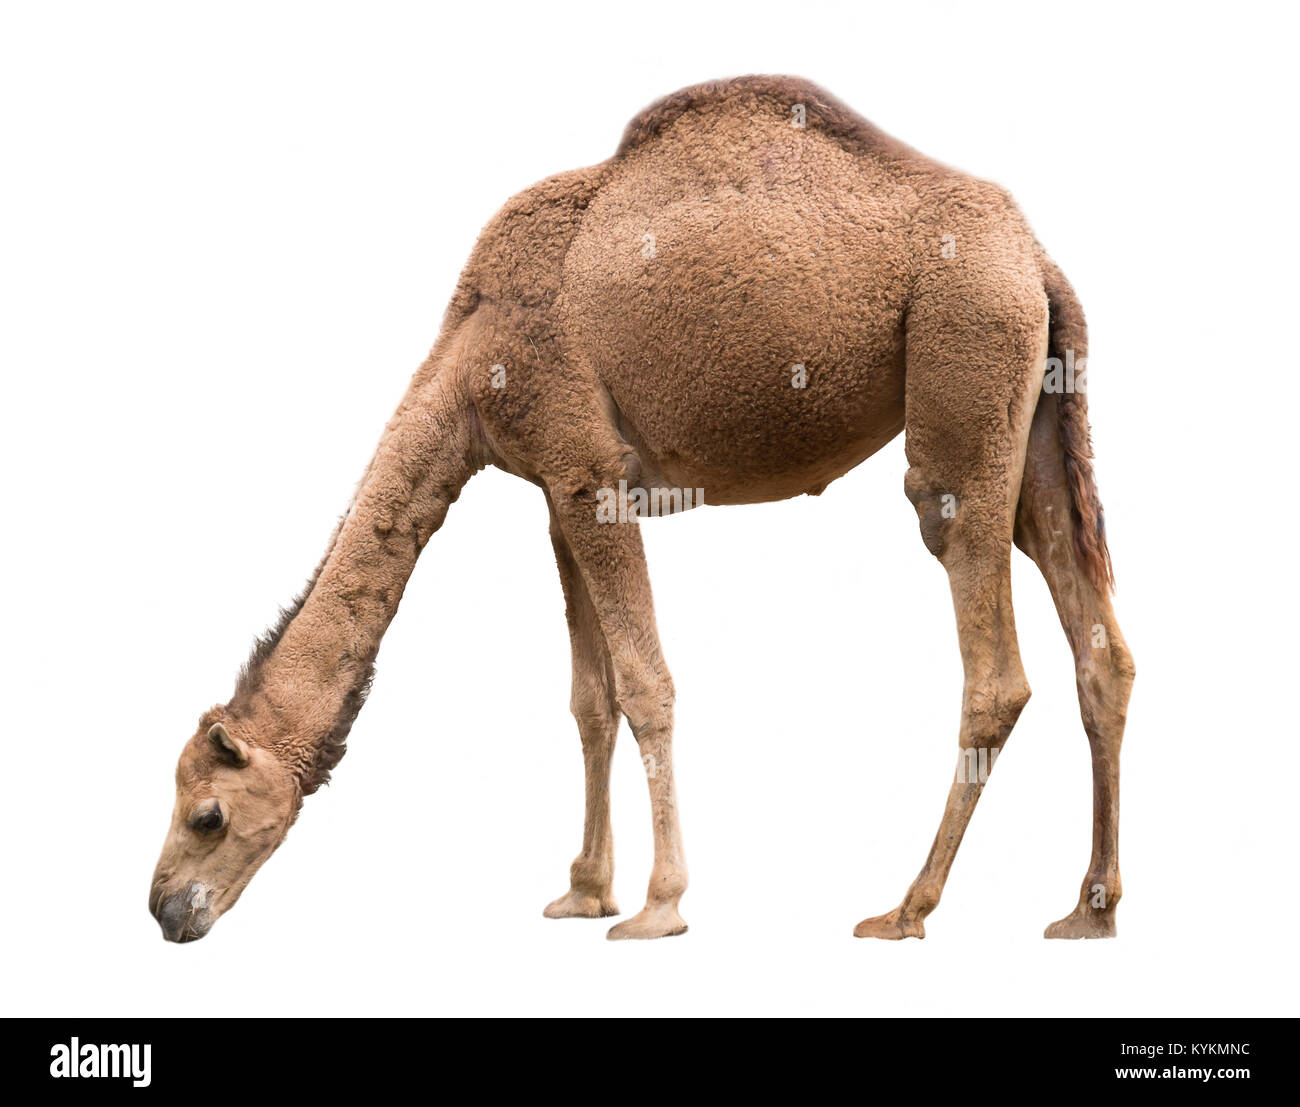 Le dromadaire ou chameau d'arabie isolé sur fond blanc Banque D'Images